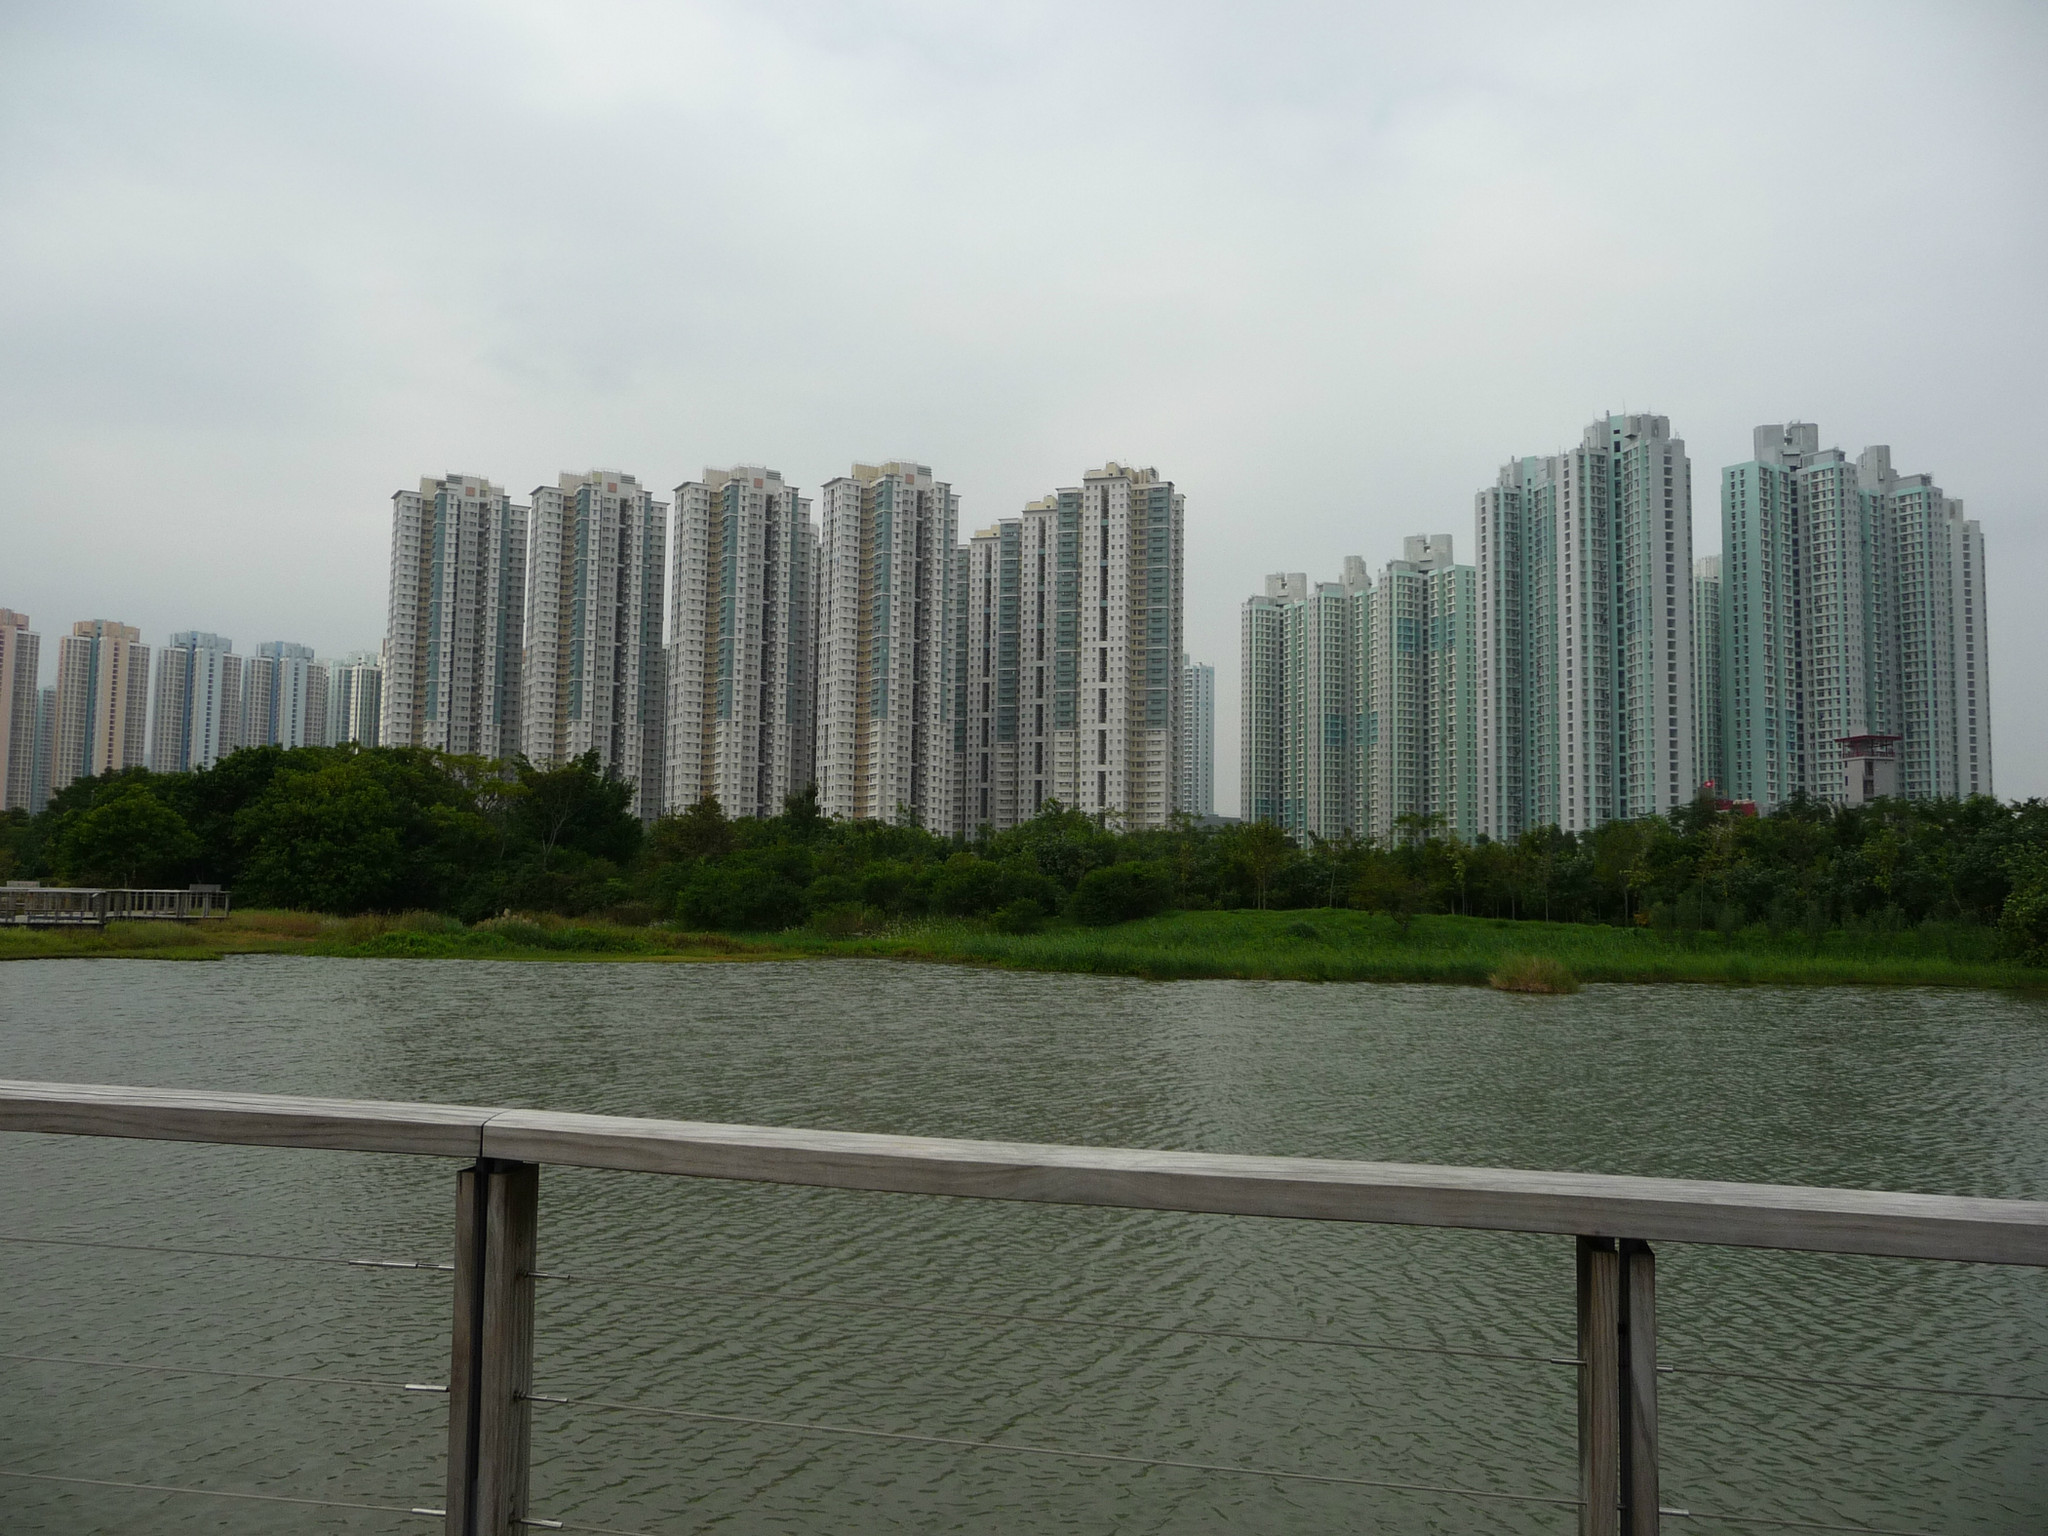 香港湿地公园